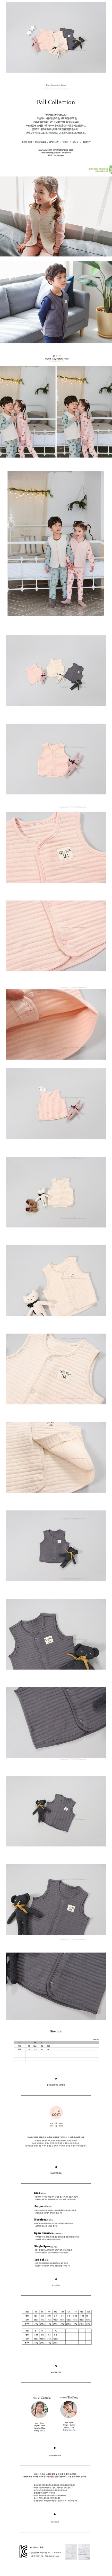 【超值特價】韓國製柔軟舒適有機棉背心-粉色